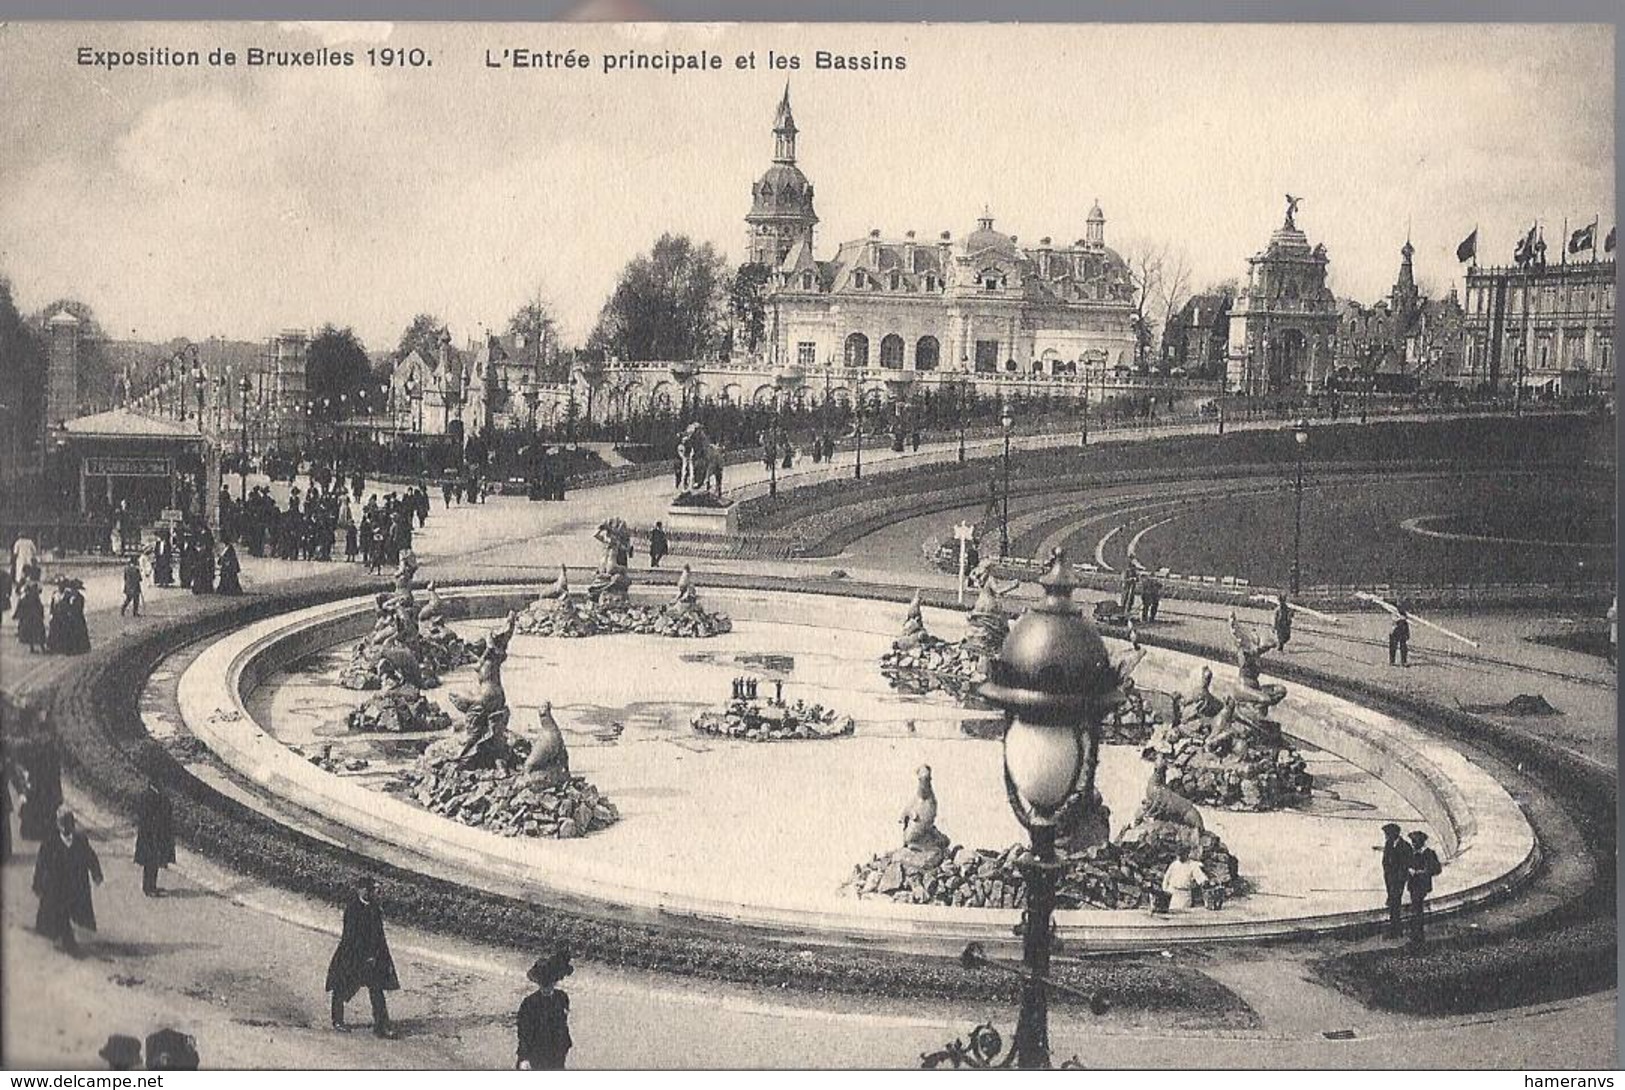 Exposition Universelle De Bruxelles 1910 - L'Entrèe Principale Et Les Bassins - HP1688 - Universal Exhibitions